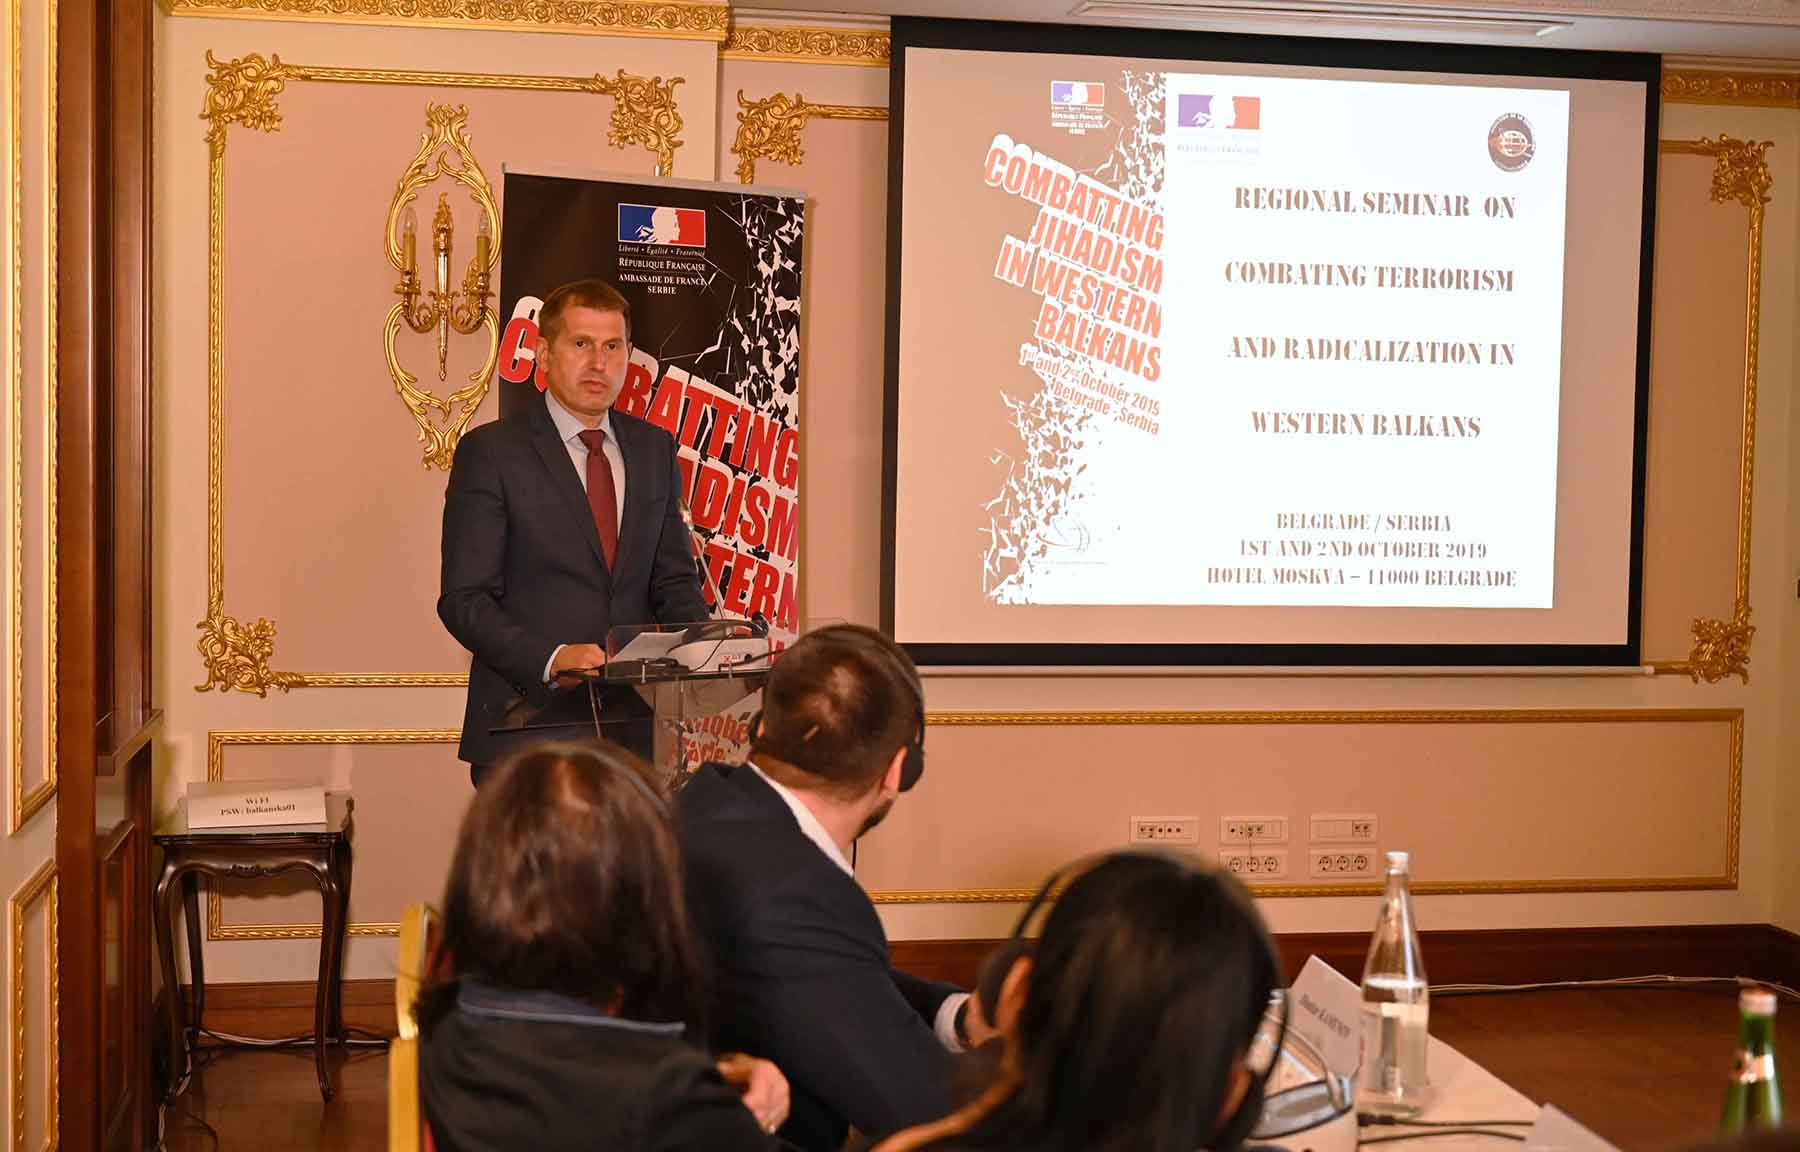 Rebić: Republika Srbija posvećena borbi protiv terorizma